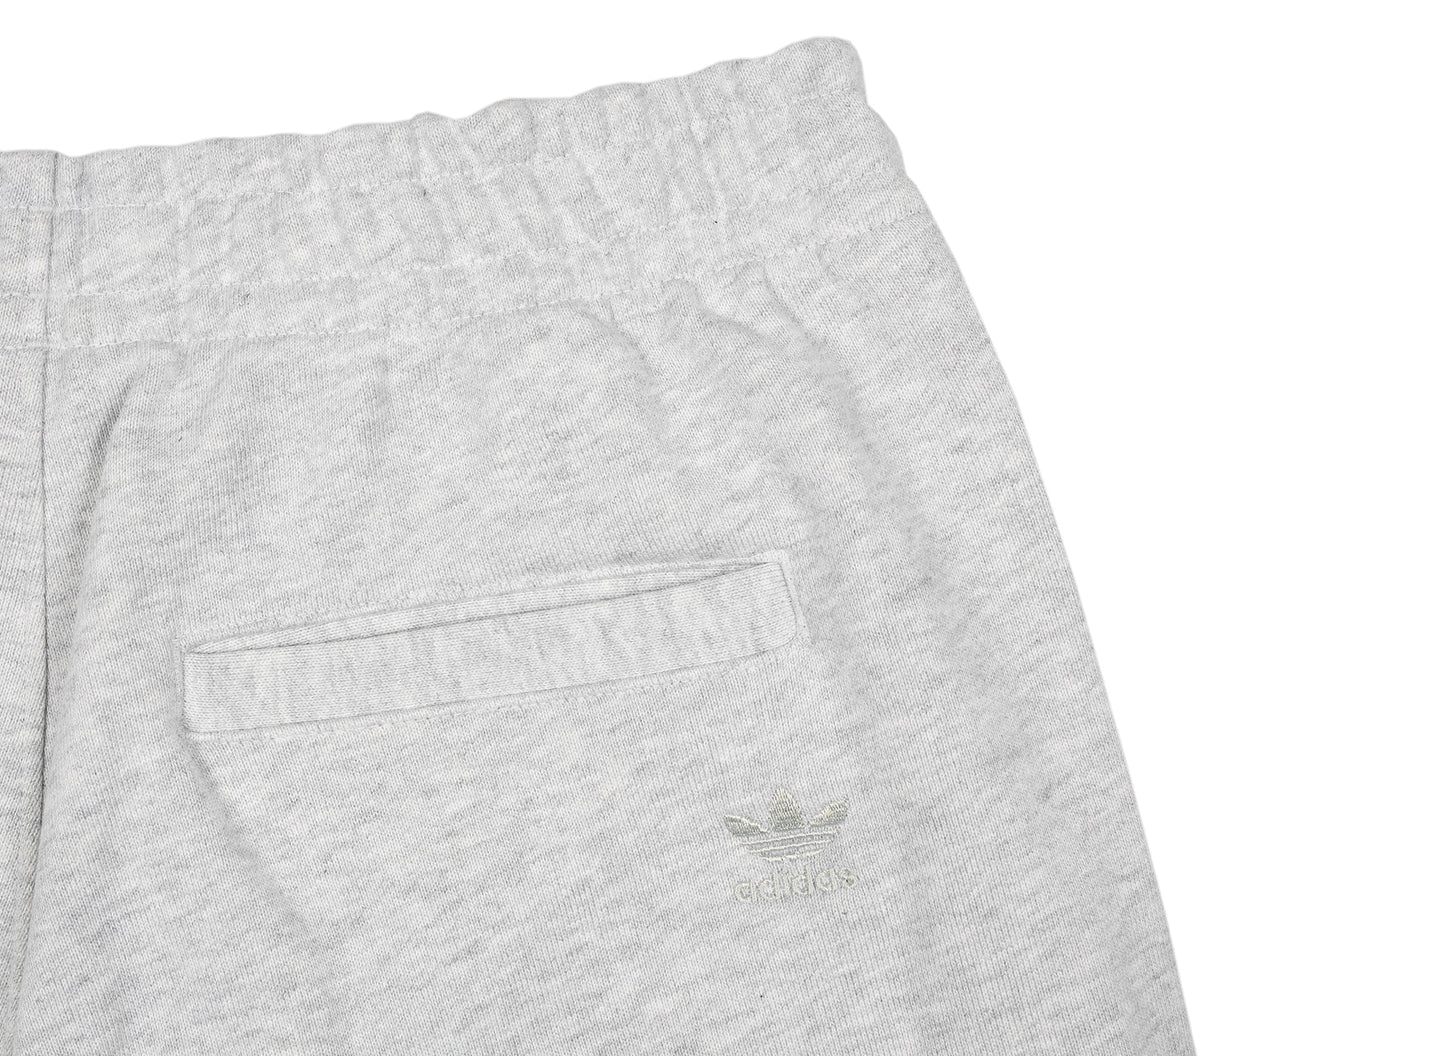 Adidas Pharrell Williams Basics Shorts in Grey